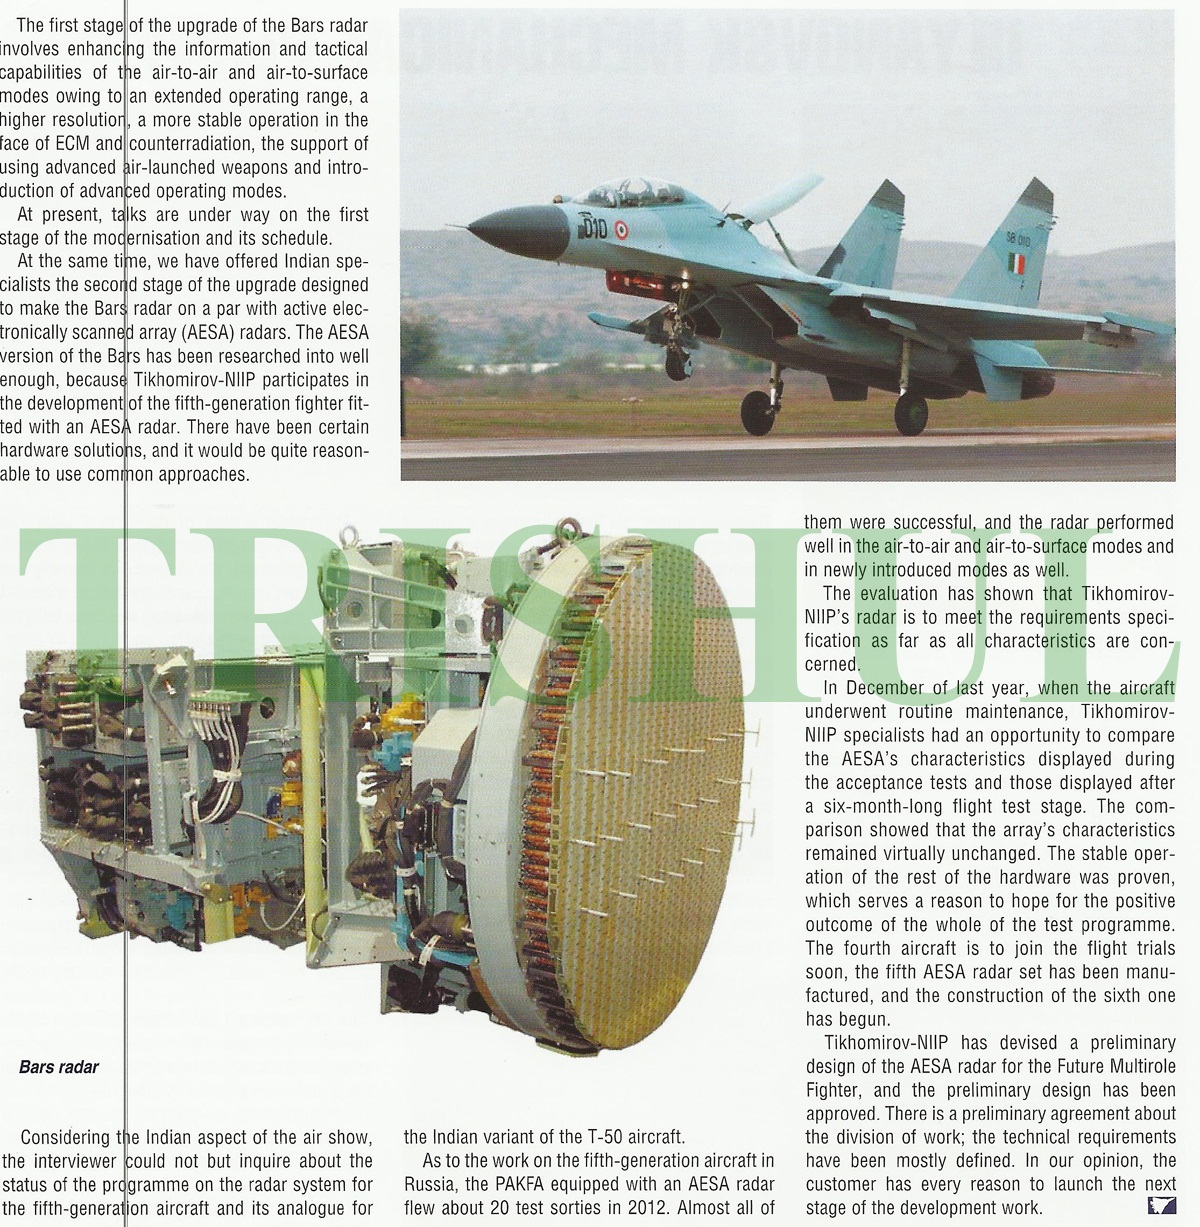 Russia-Supplied+Avionics-5.jpg